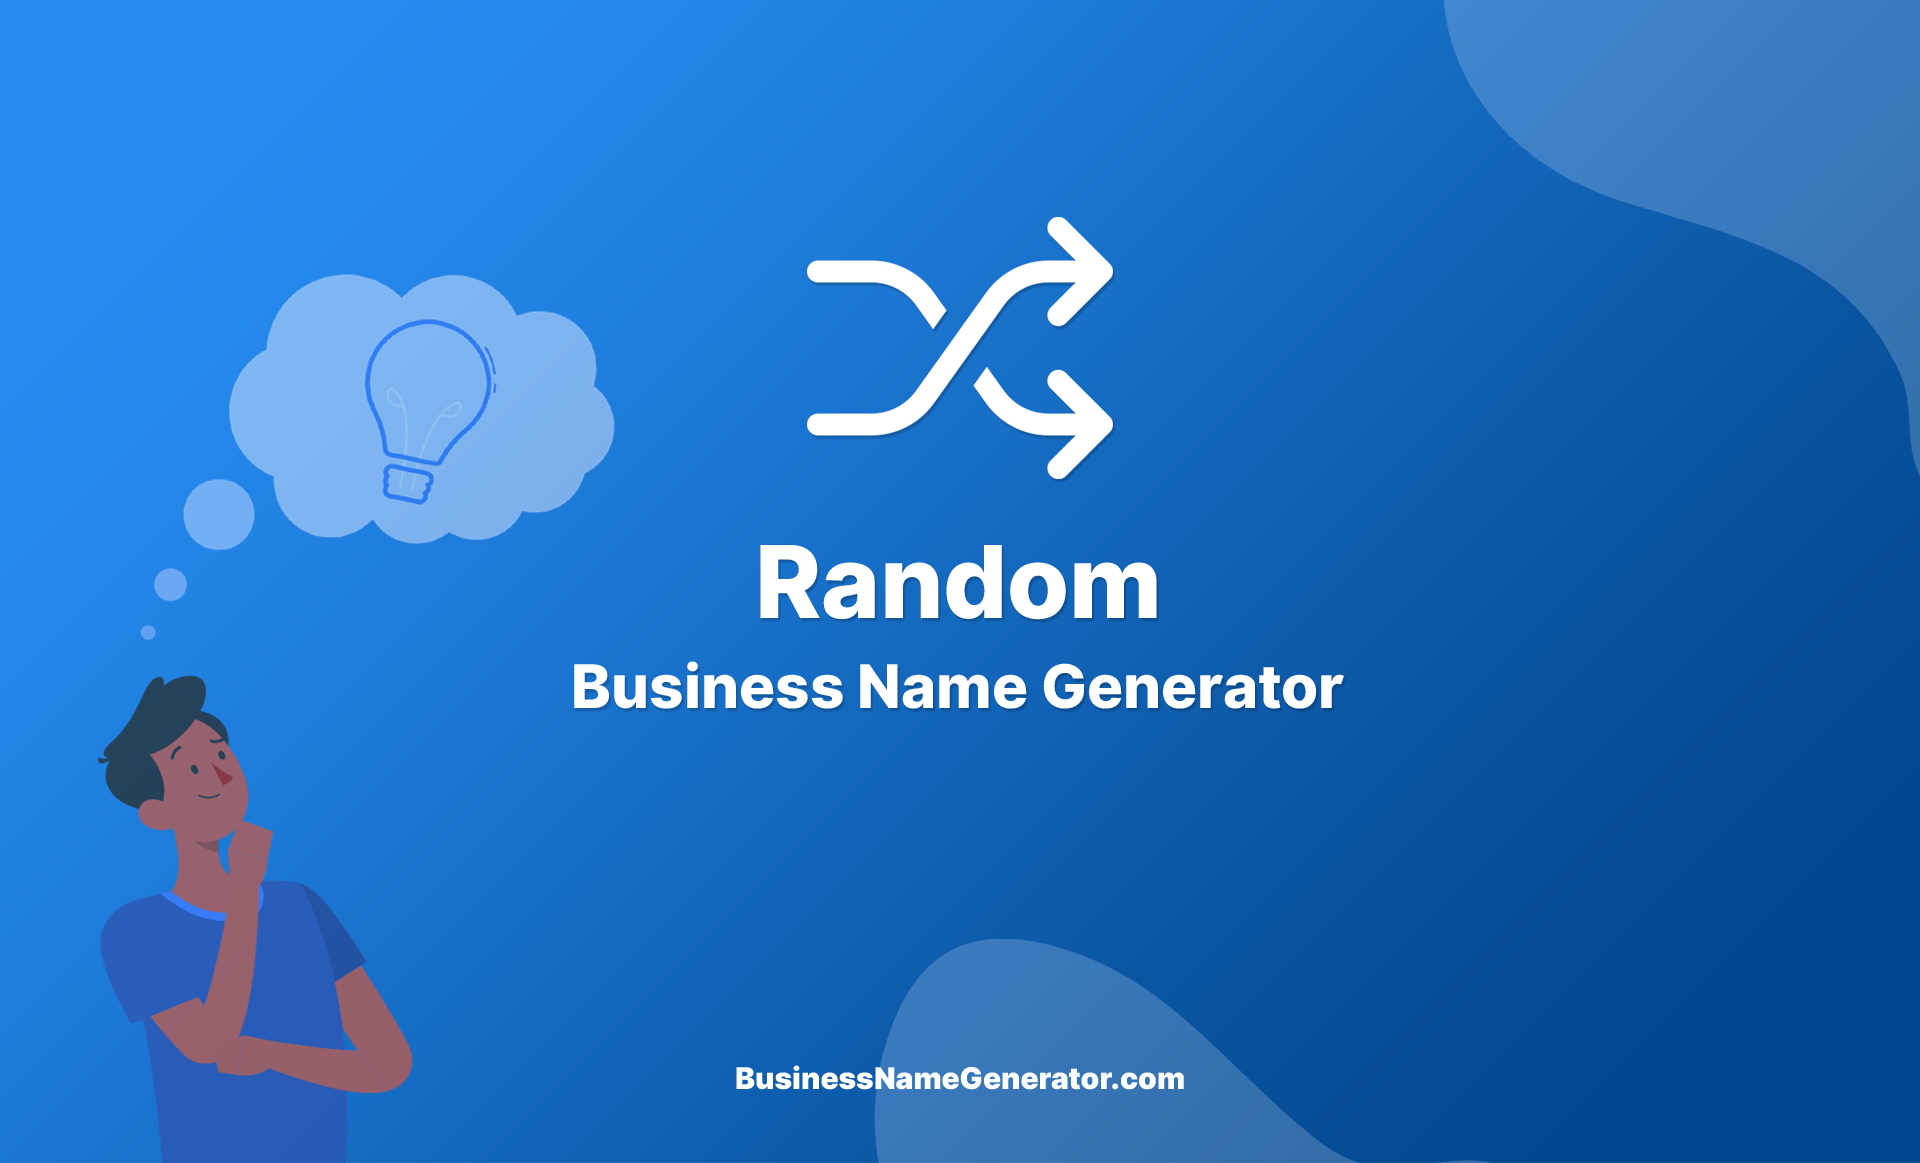 Random Business Name Generator Guide & Ideas